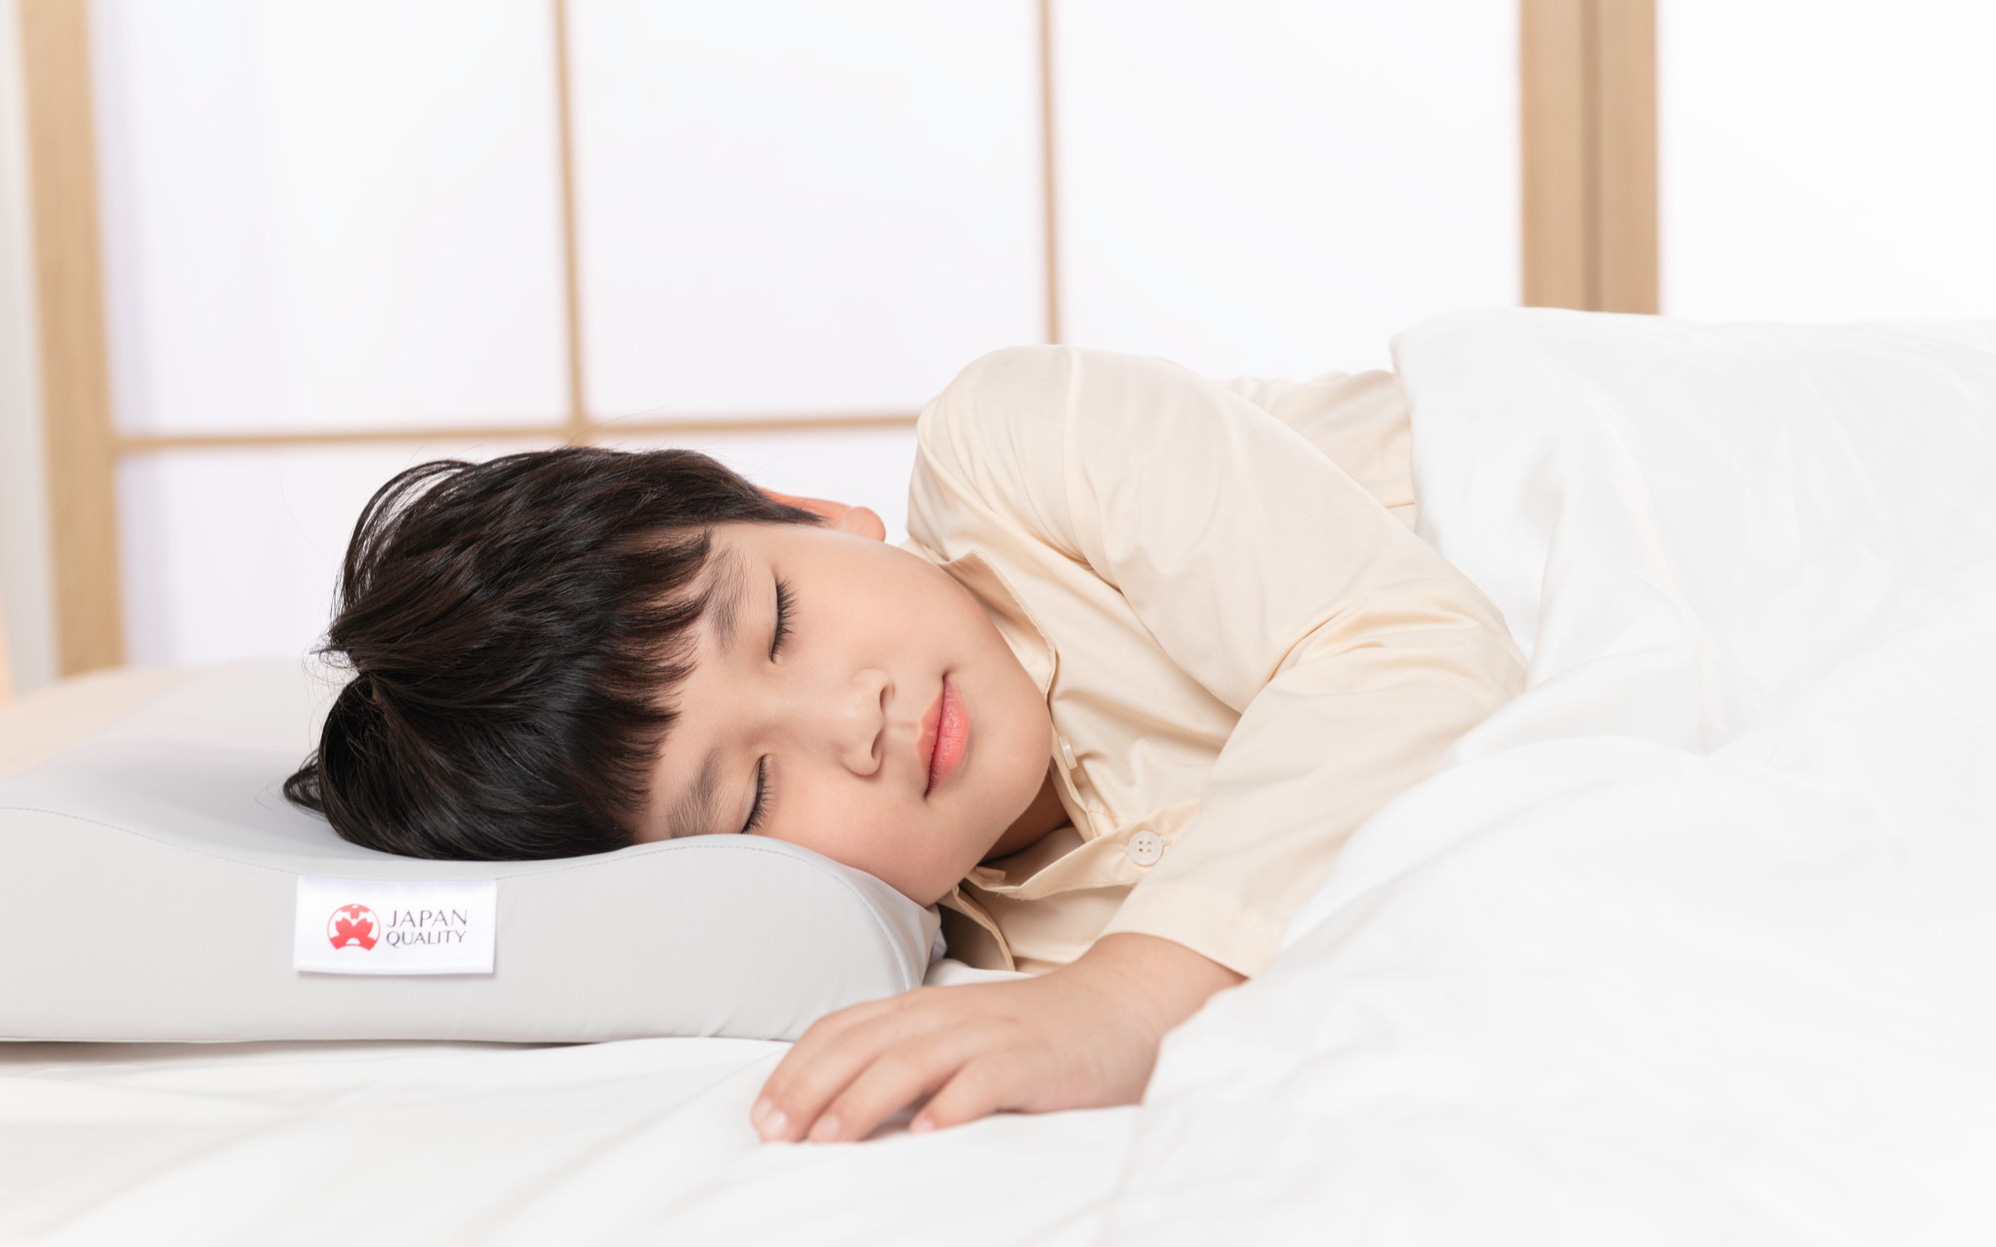 AEROFLOW ra mắt sản phẩm chăm sóc giấc ngủ dành riêng cho bé yêu